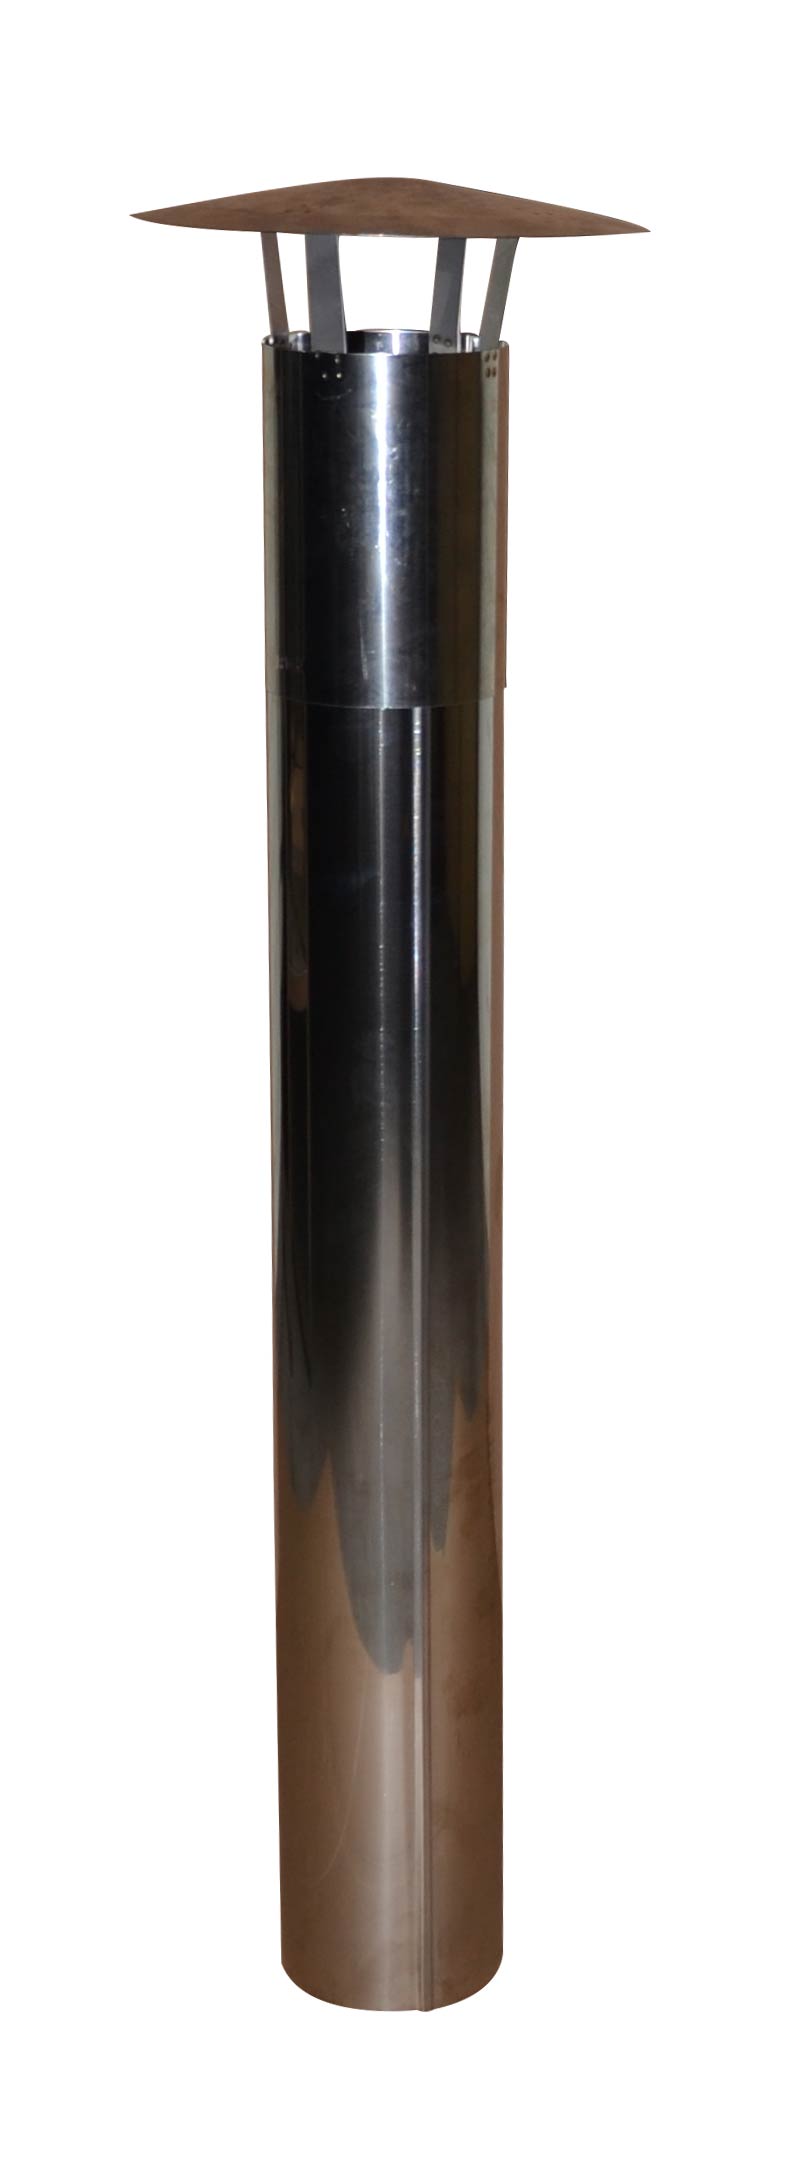 Kaminrohr 140mm aus Edelstahl mit Abdeckhaube